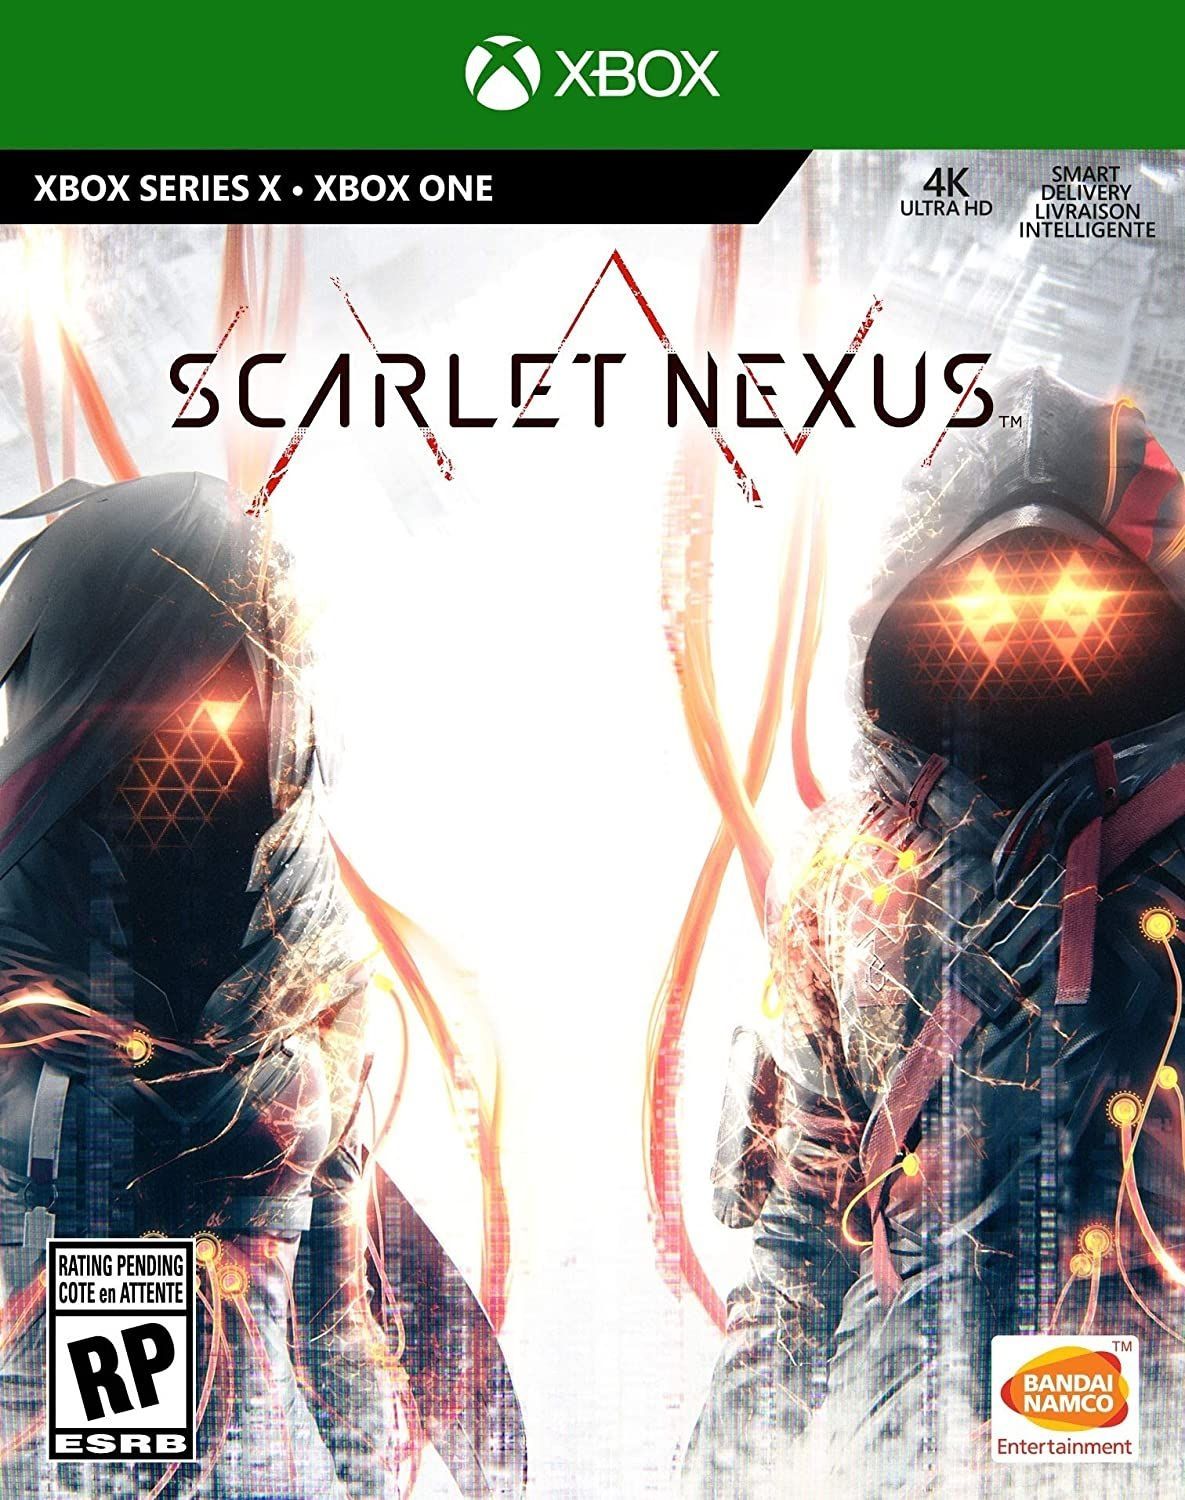 Scarlet Nexus: as primeiras notas que o jogo está recebendo